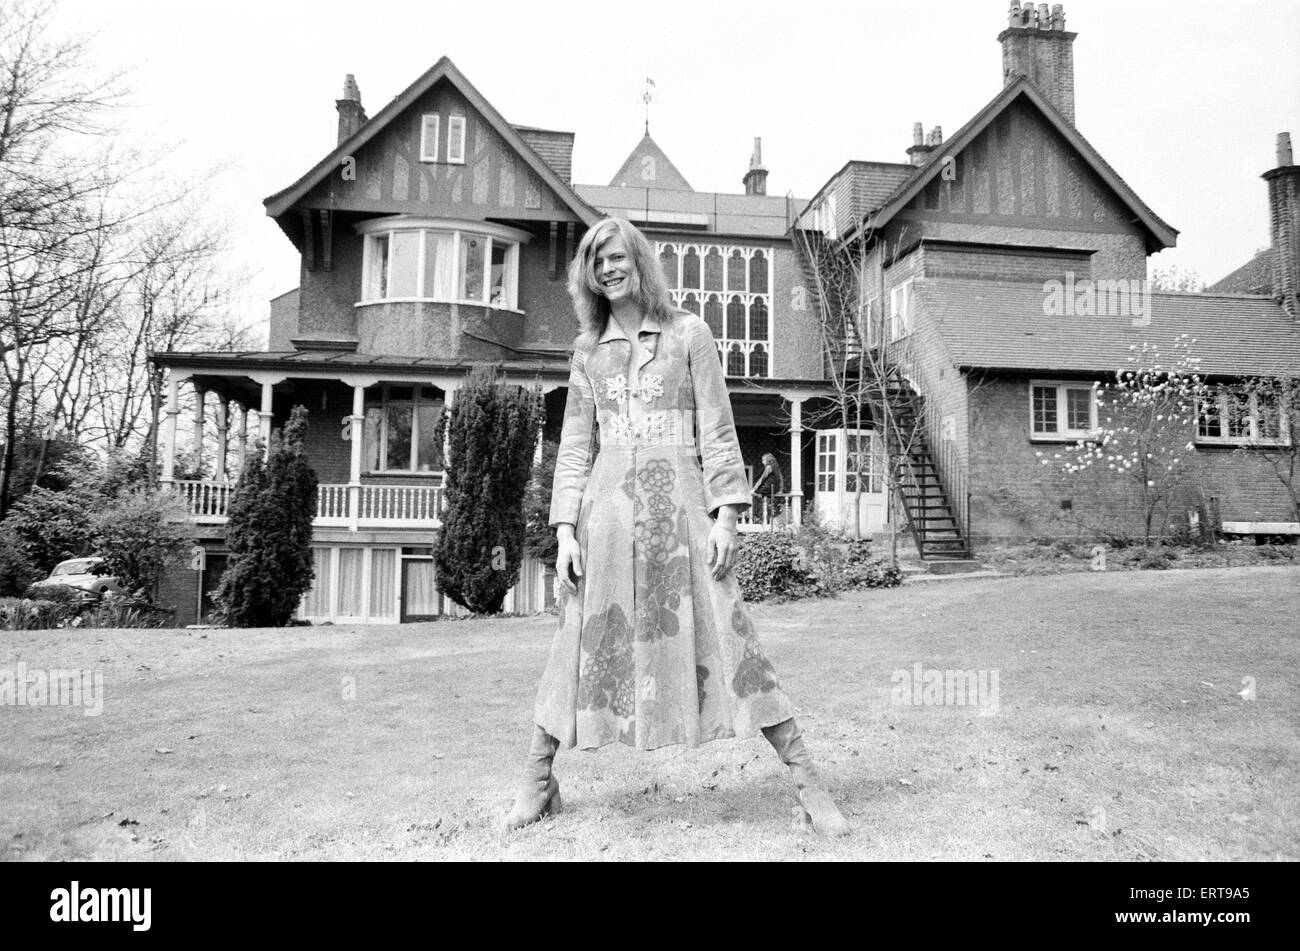 David Bowie at his home, Haddon Hall, at Beckenham, Kent, 20th April 1971. Stock Photo